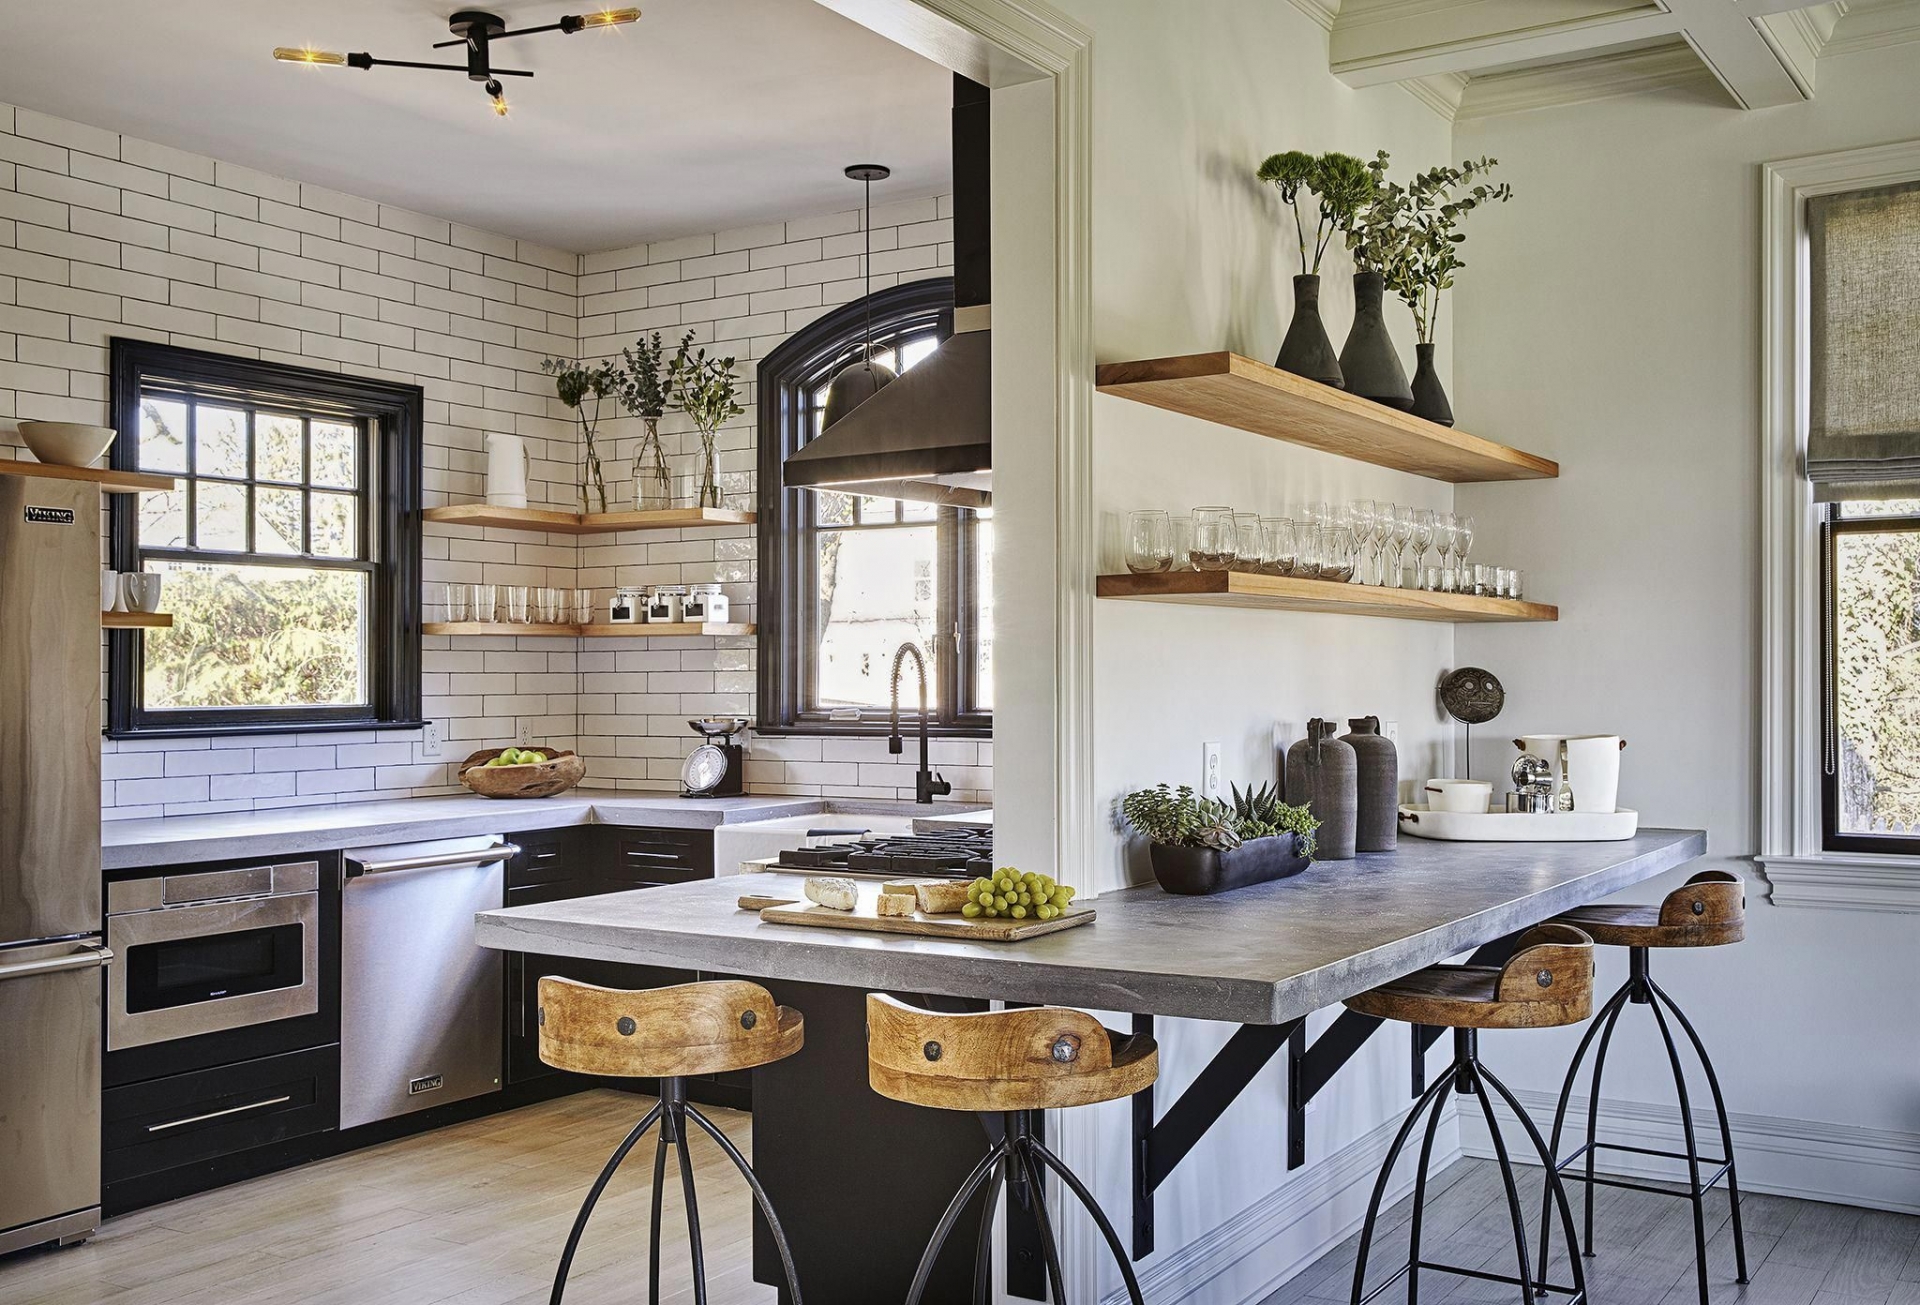  Mặt bàn bê tông là ứng dụng hoàn hảo cho bất kỳ không gian thiết kế theo phong cách nào nào, từ vintage, truyền thống, hiện đại hay phong cách công nghiệp như phòng bếp này.